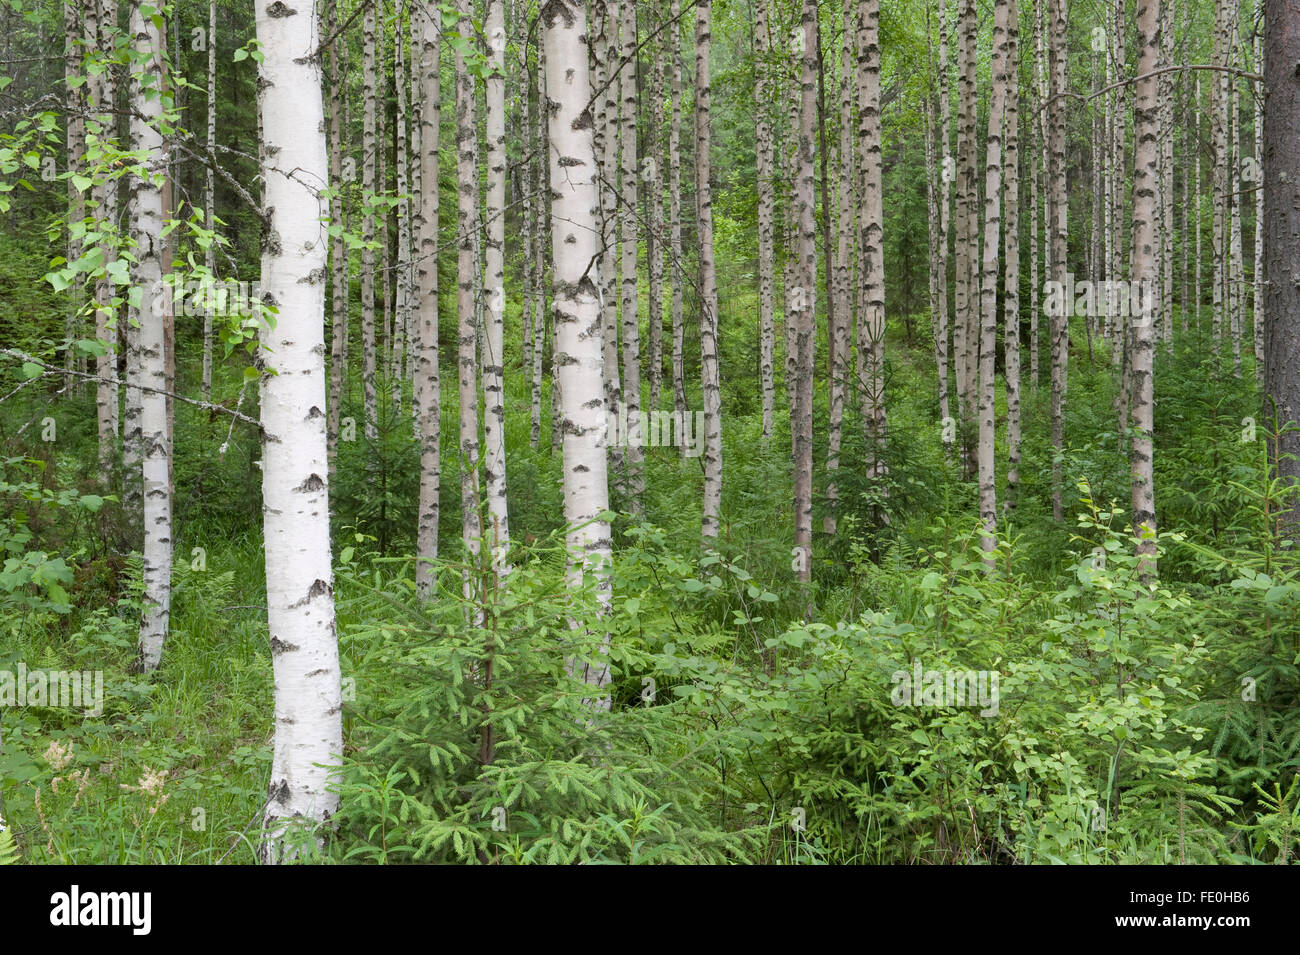 Silver Birch woodland, Betula pendula and ferns, Kangasala, Finland Stock Photo